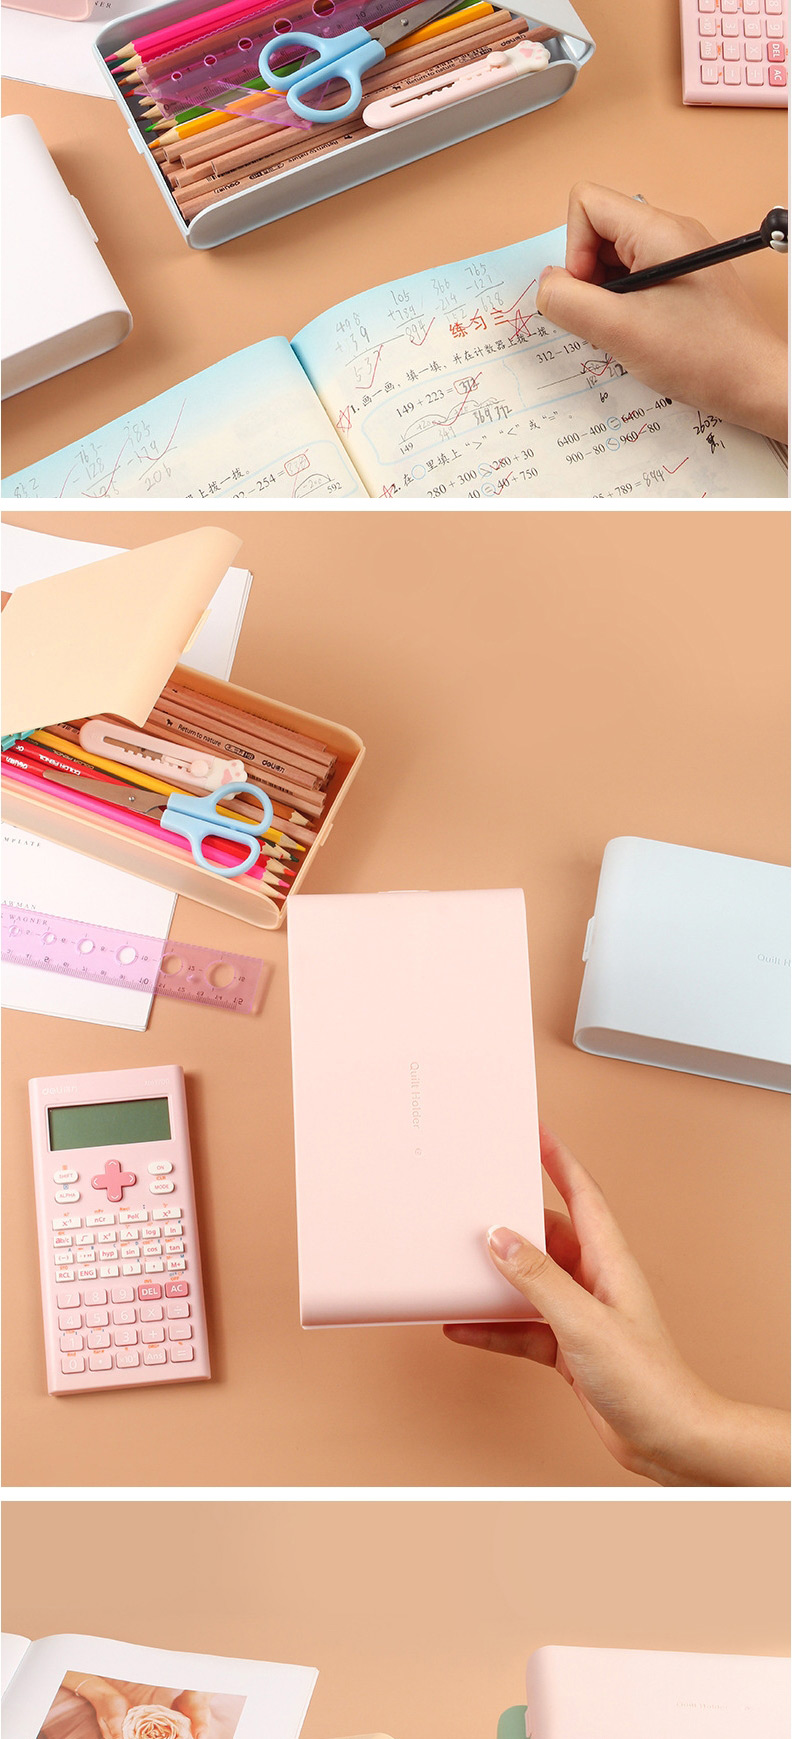 Fashion Khaki Solid Color Plastic Large Capacity Pencil Case Storage Box,Pencil Case/Paper Bags